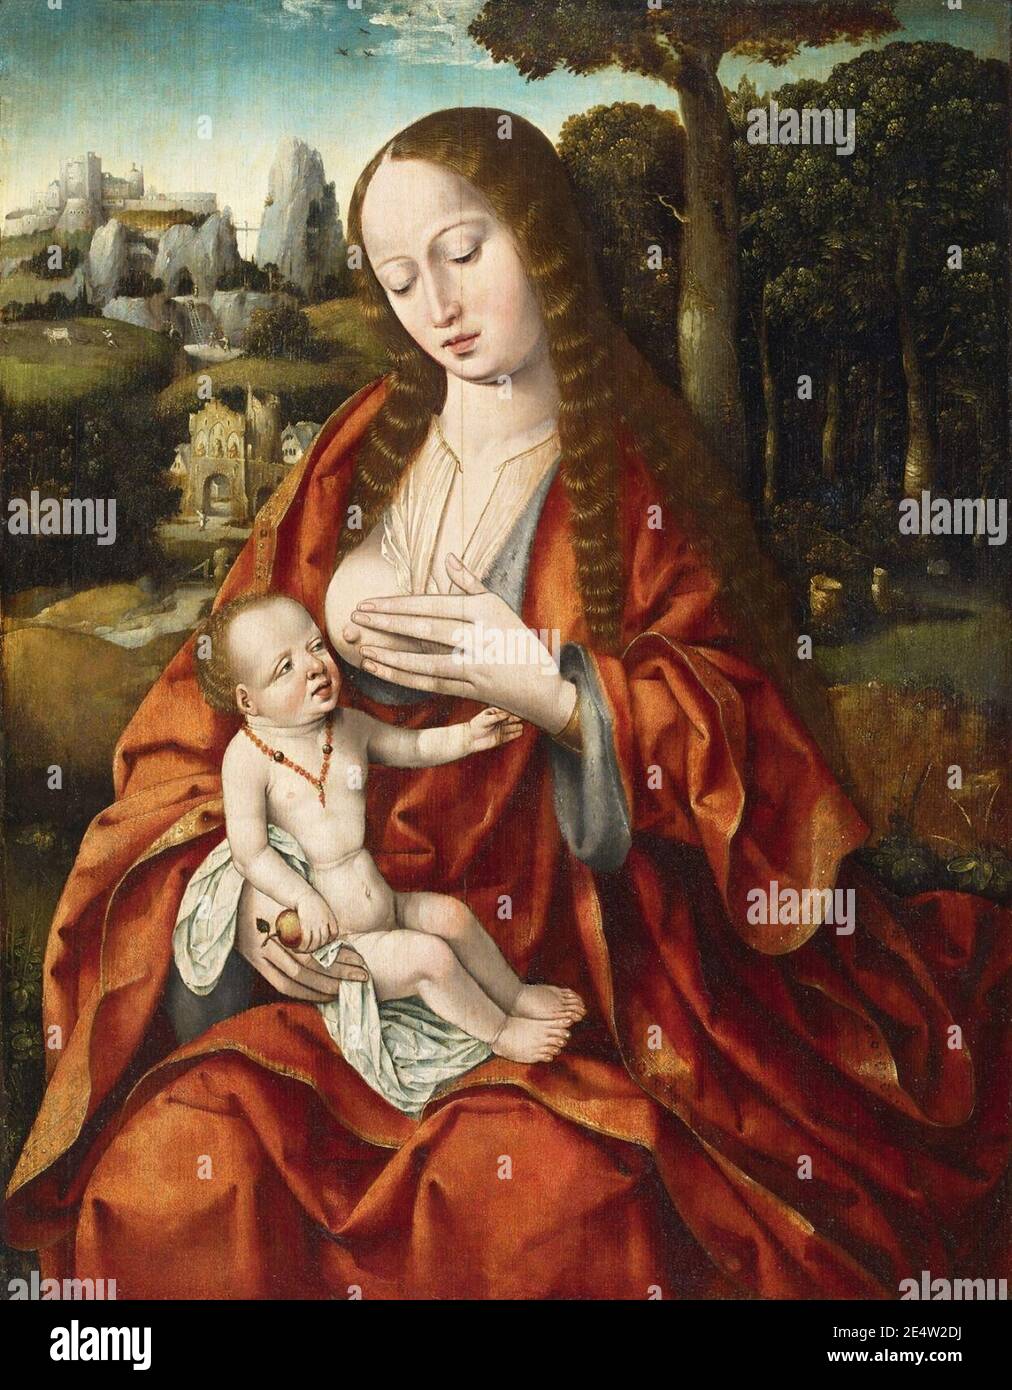 Meister des Heiligen Blutes Madonna mit Kind. Stock Photo